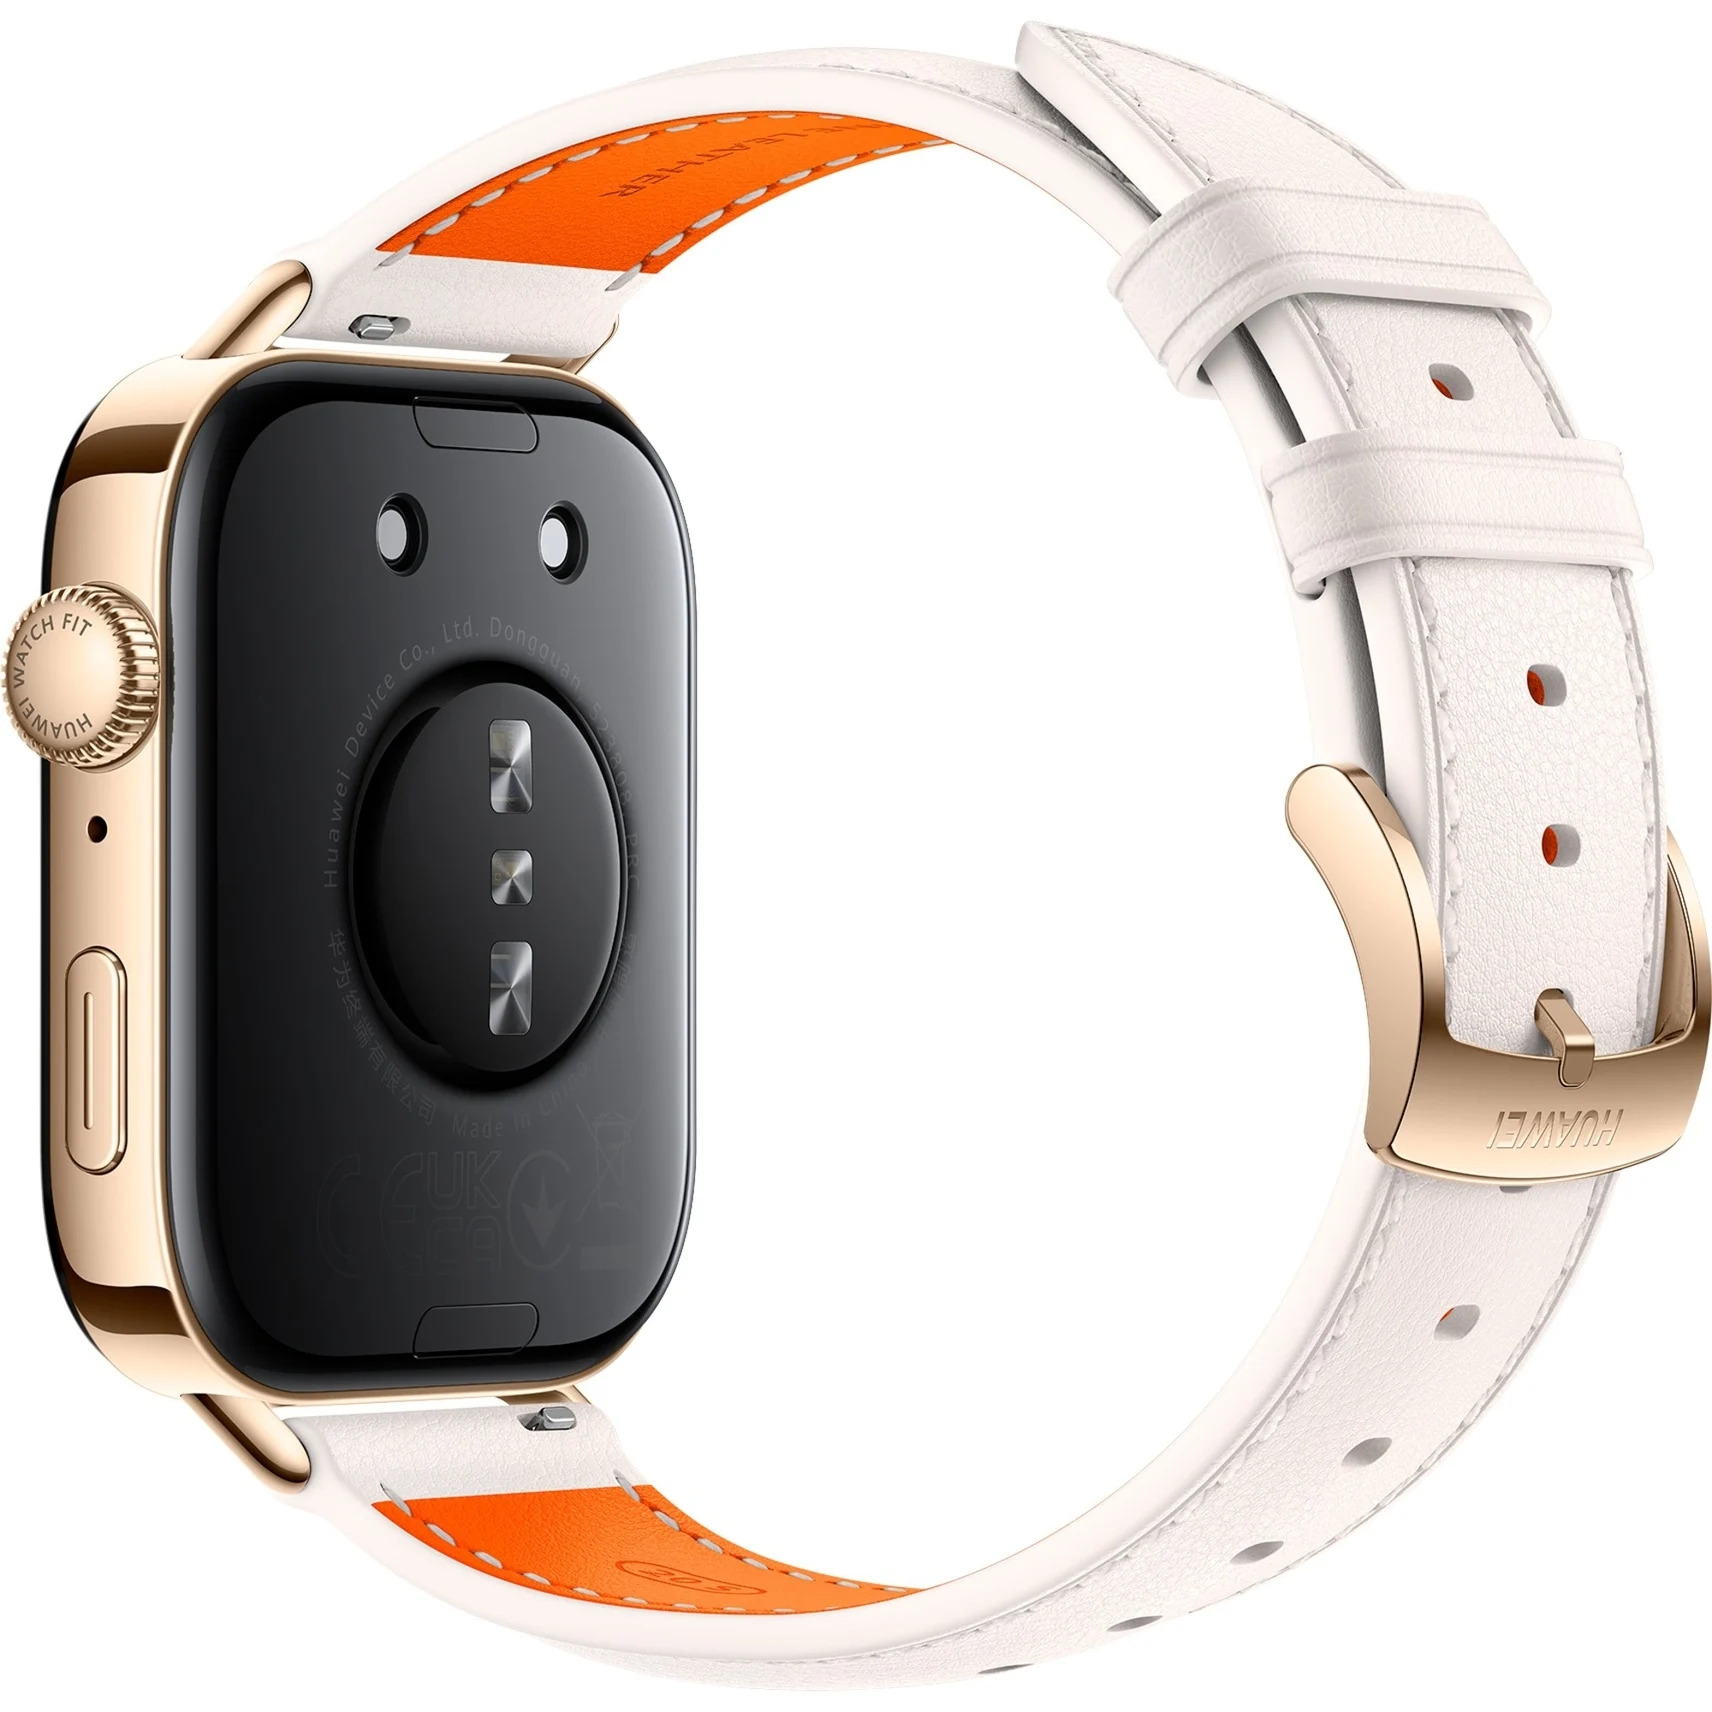 huawei odpalił kopiarkę. nie odróżnisz nowego zegarka od apple watcha